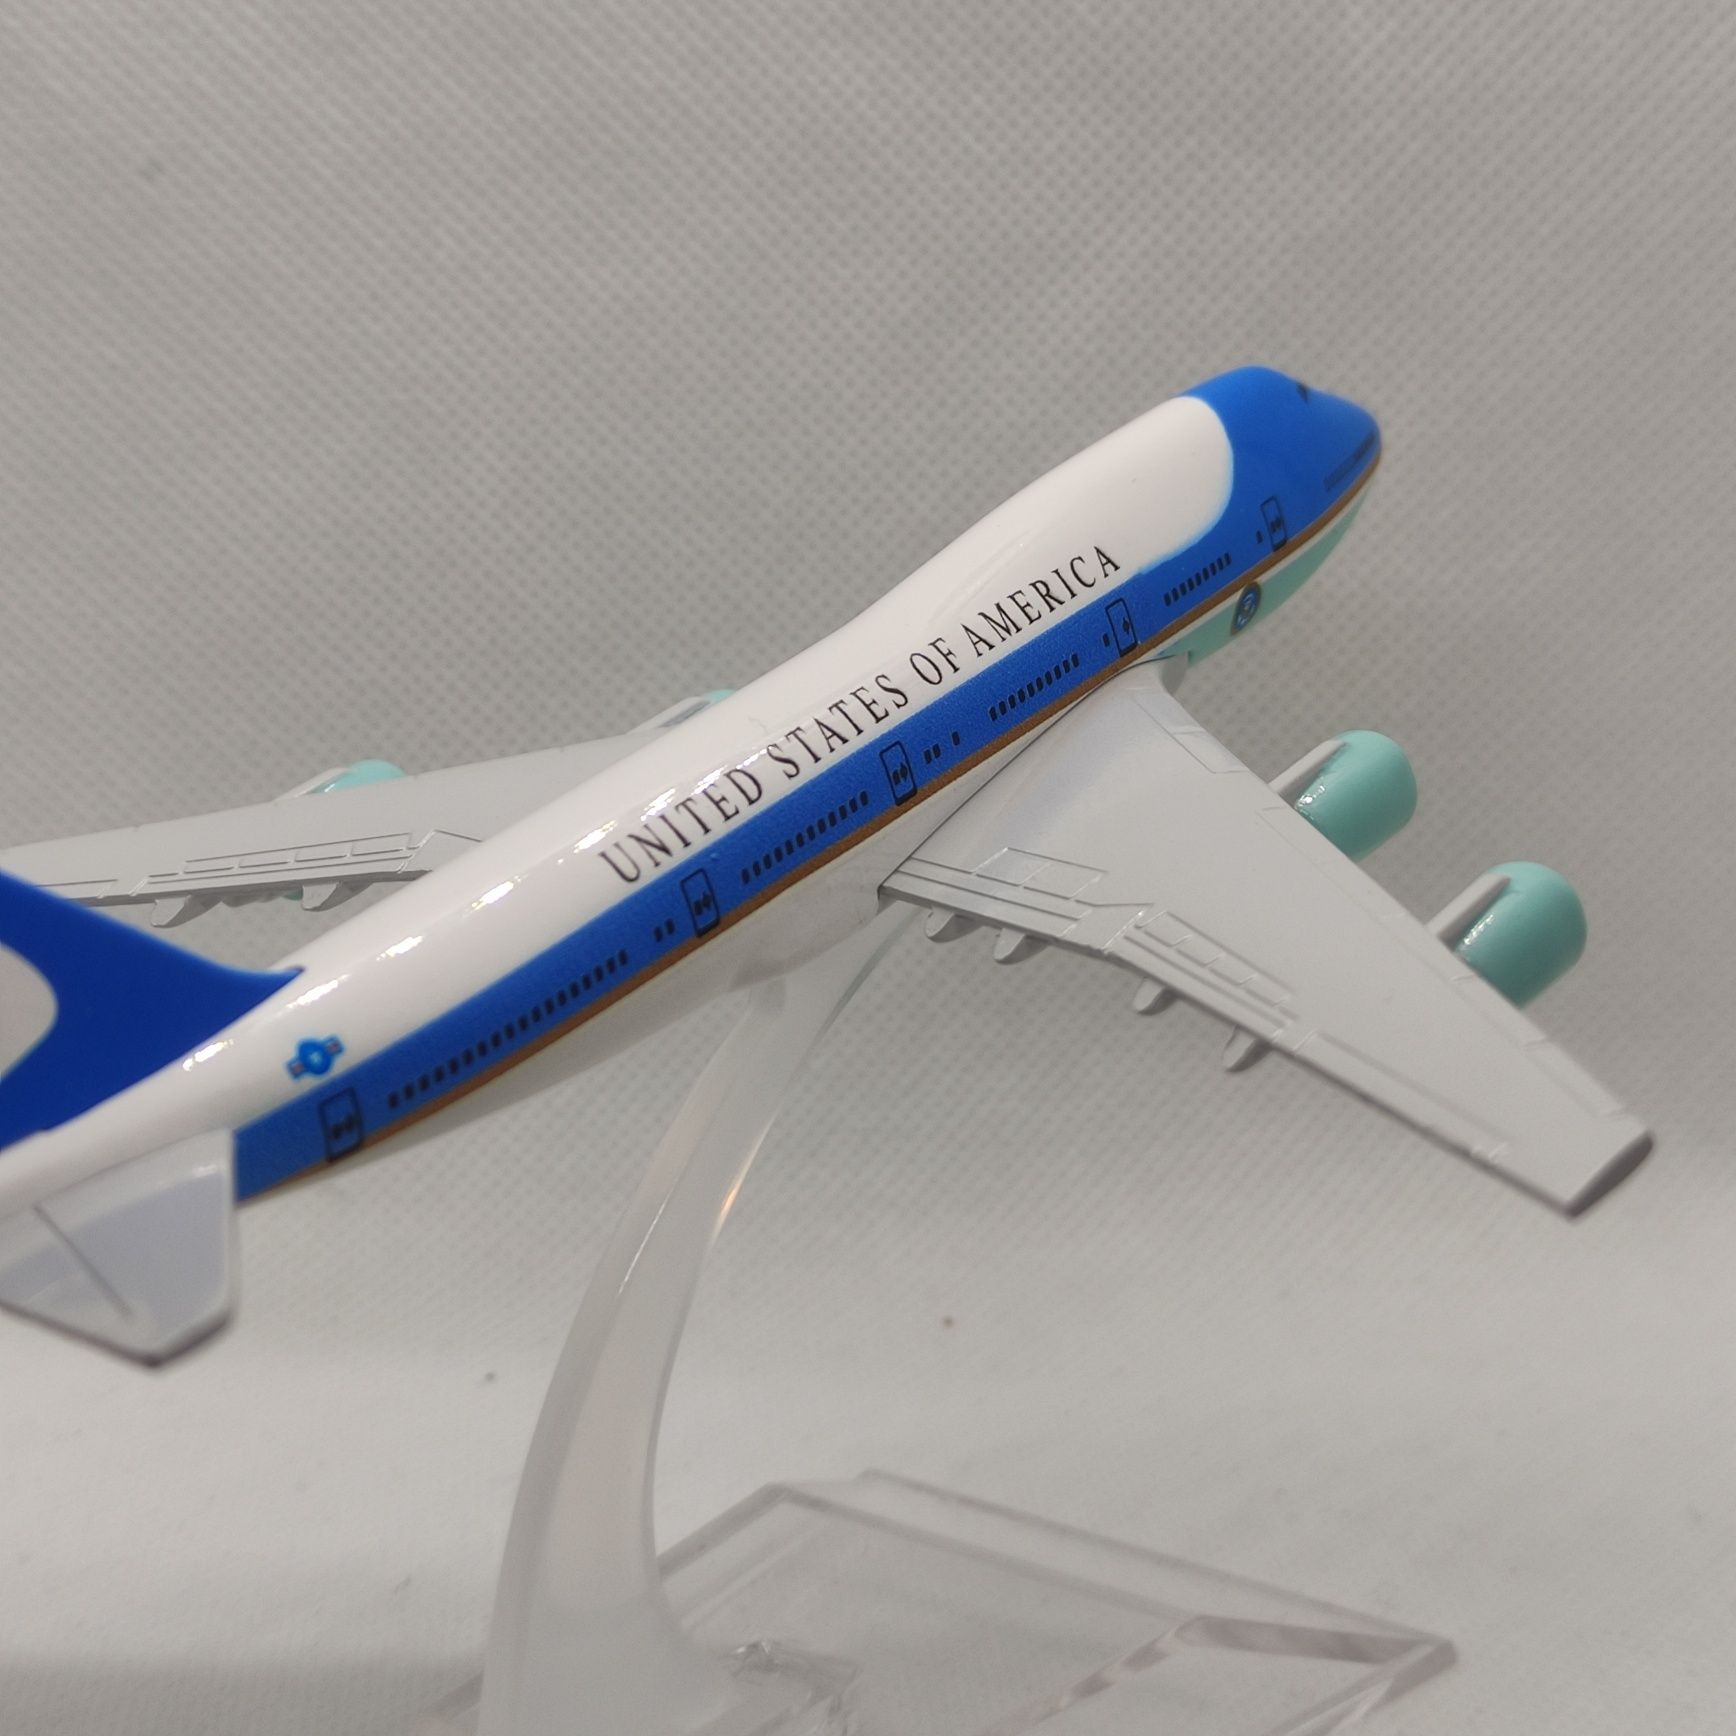 Модель літака Боинг 747